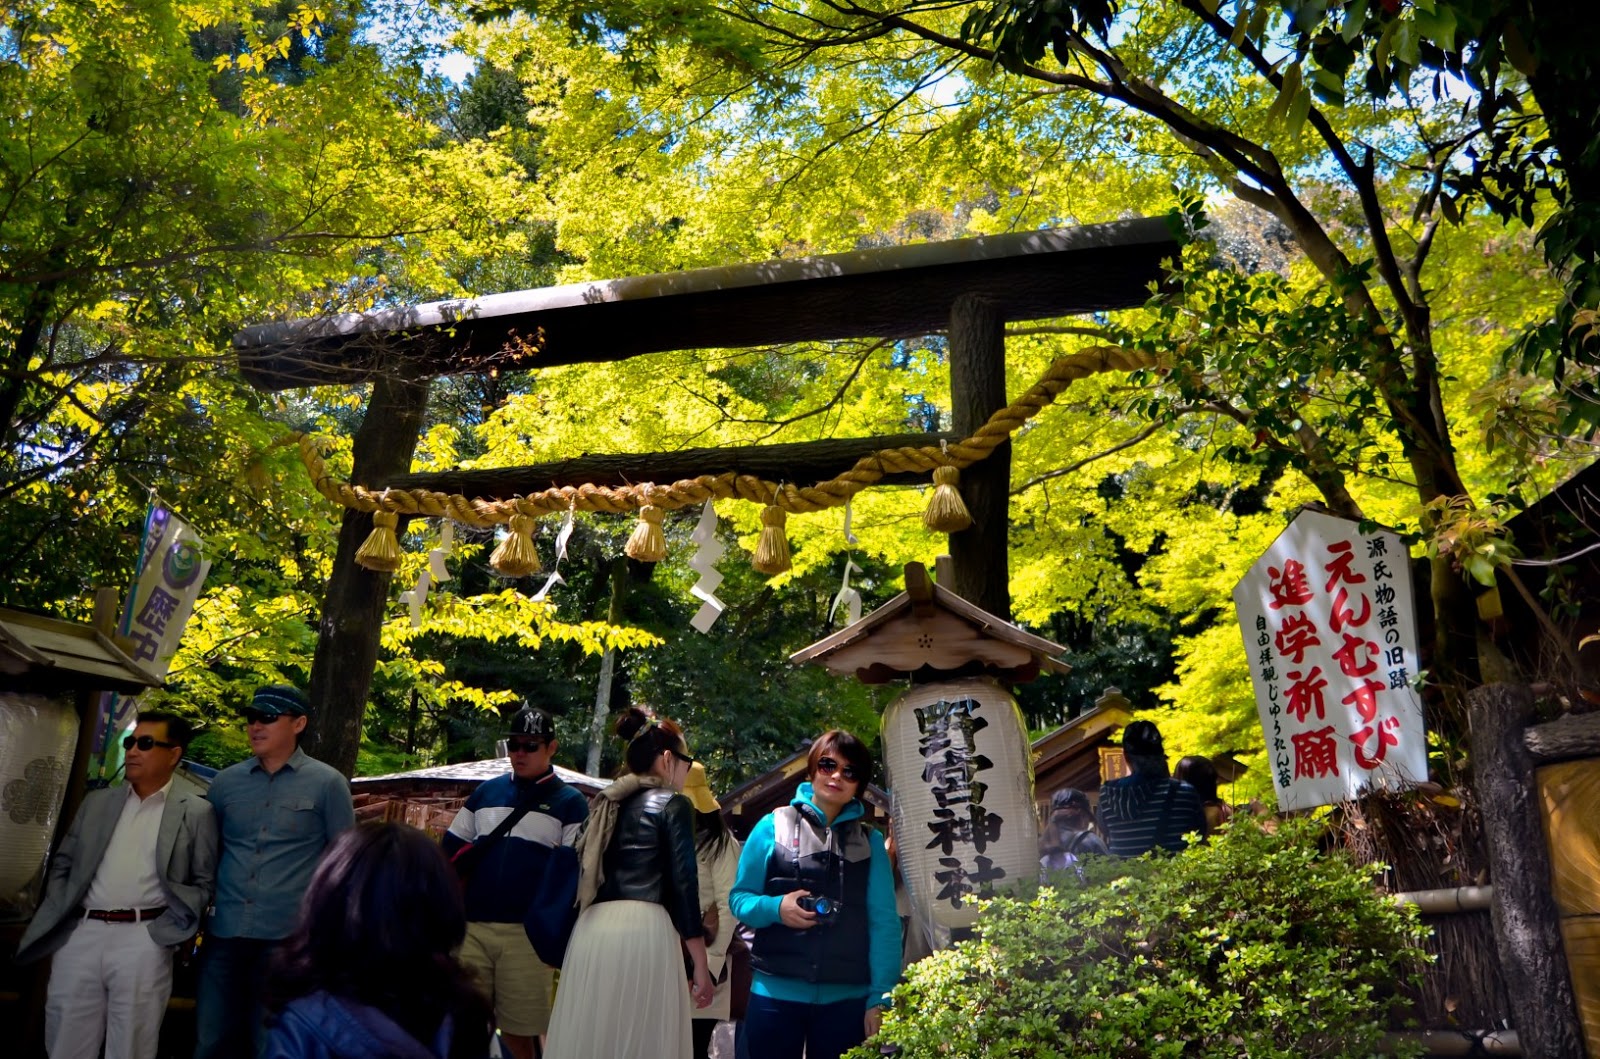 京都岚山野宫神社前的照片素材免抠元素模板下载 -图巨人